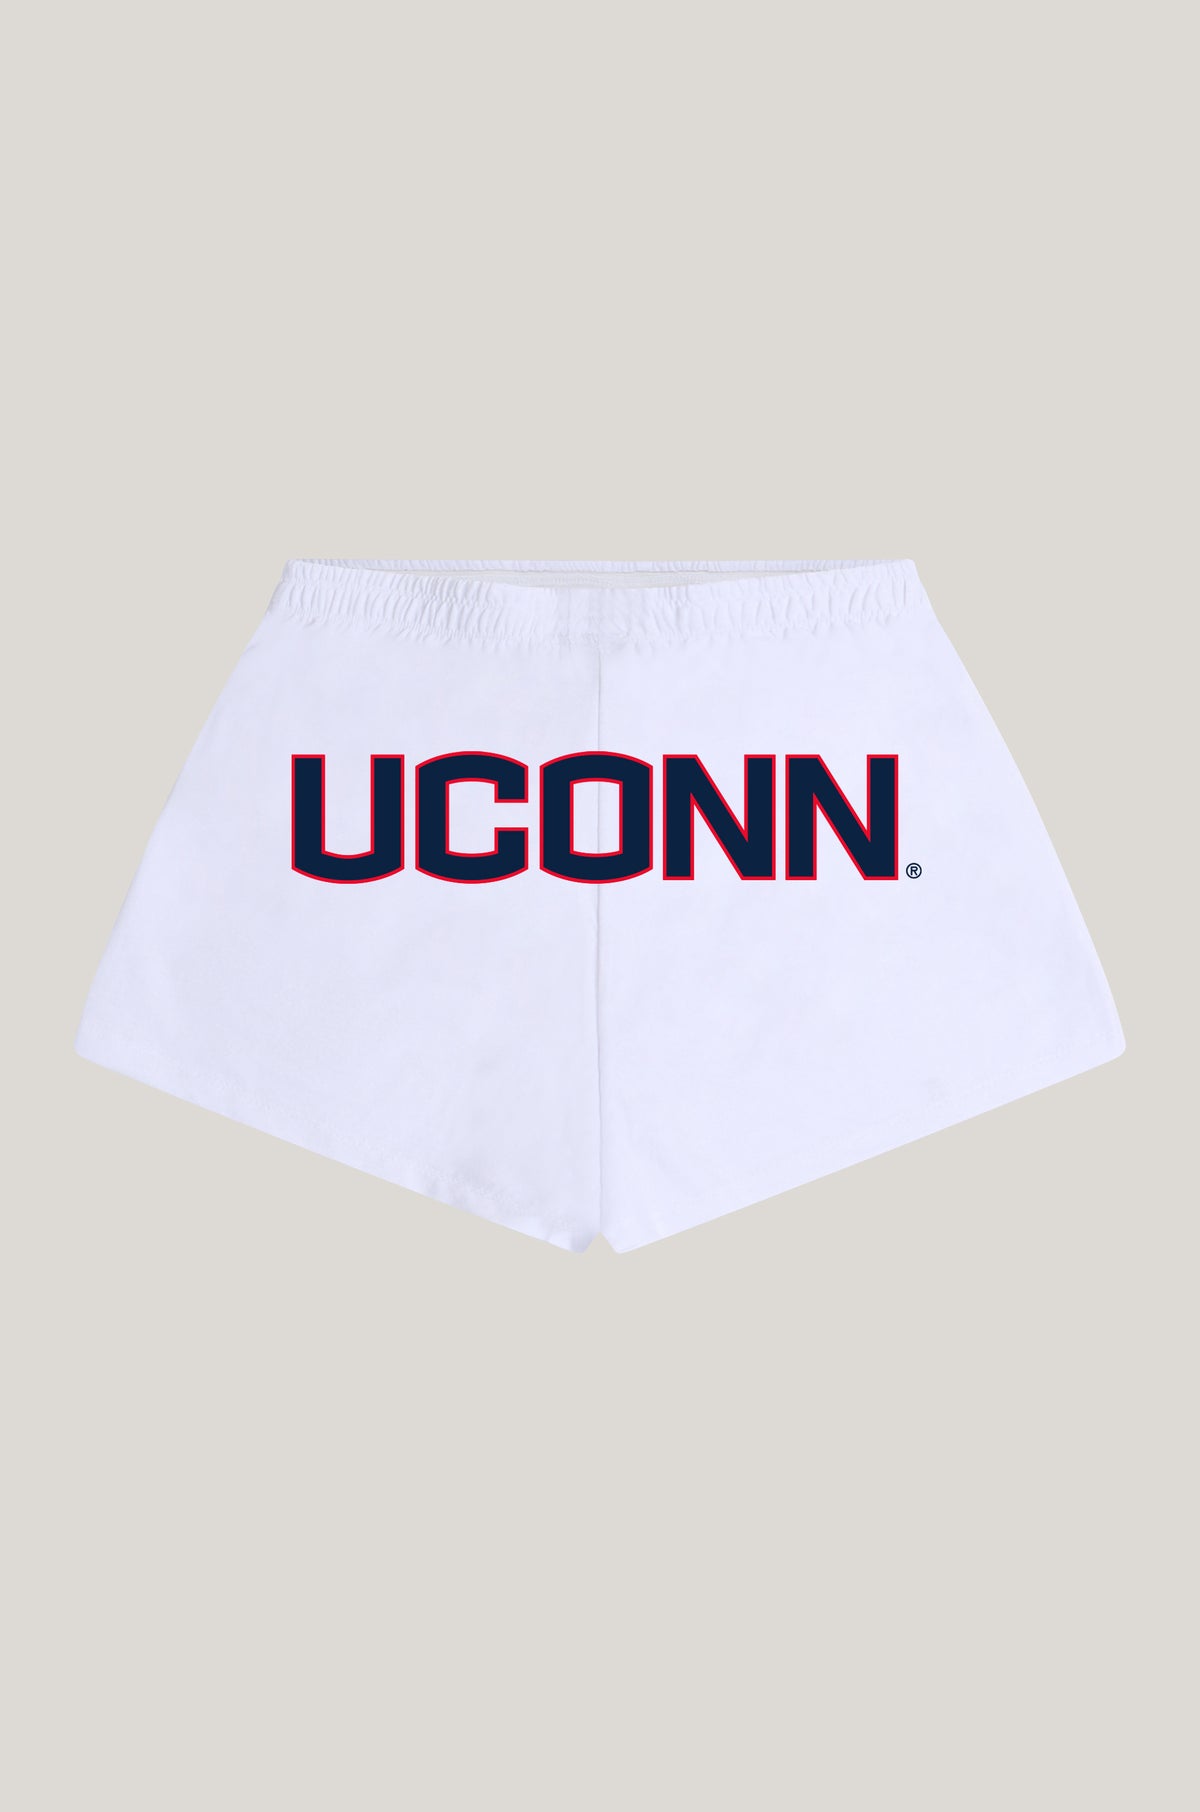 UConn P.E. Shorts